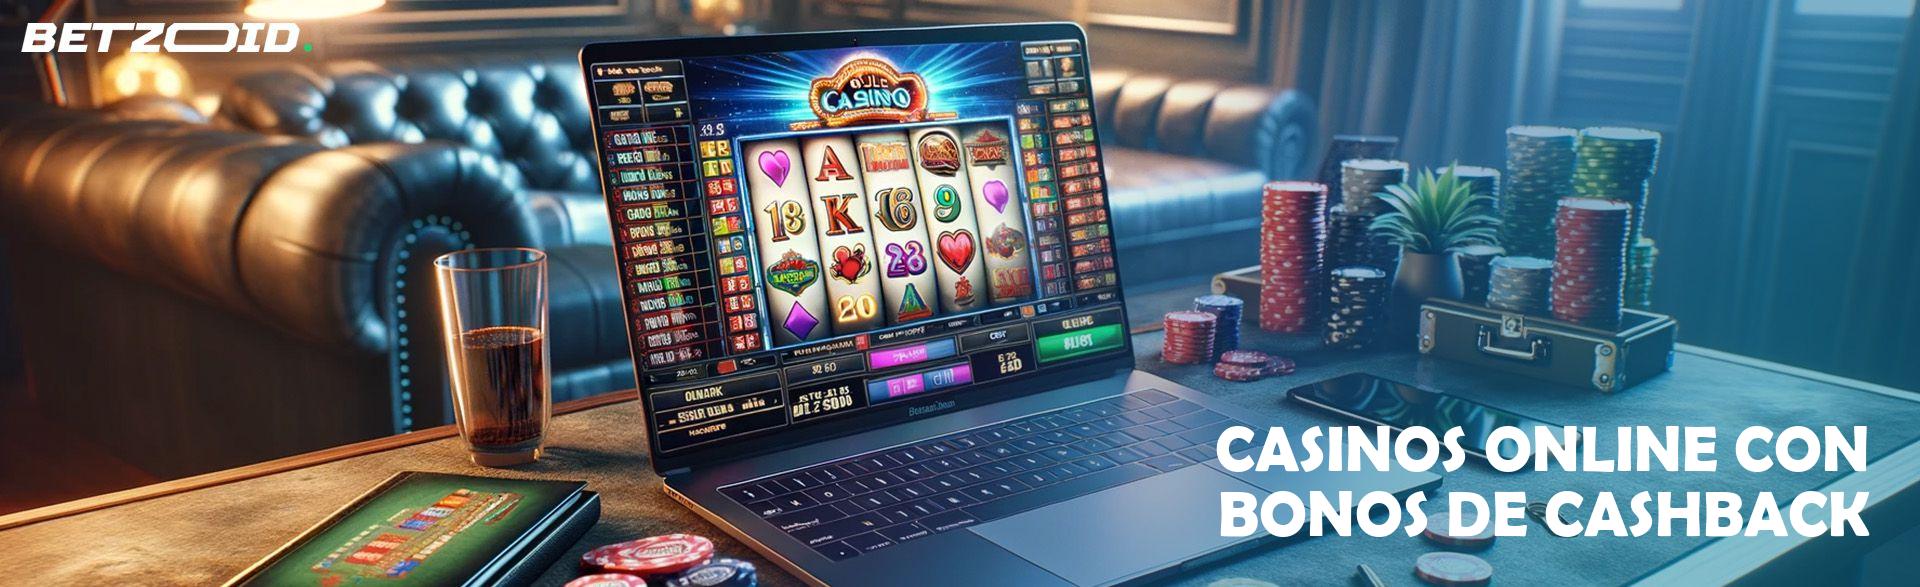 Casinos Online con Bonos de Cashback.